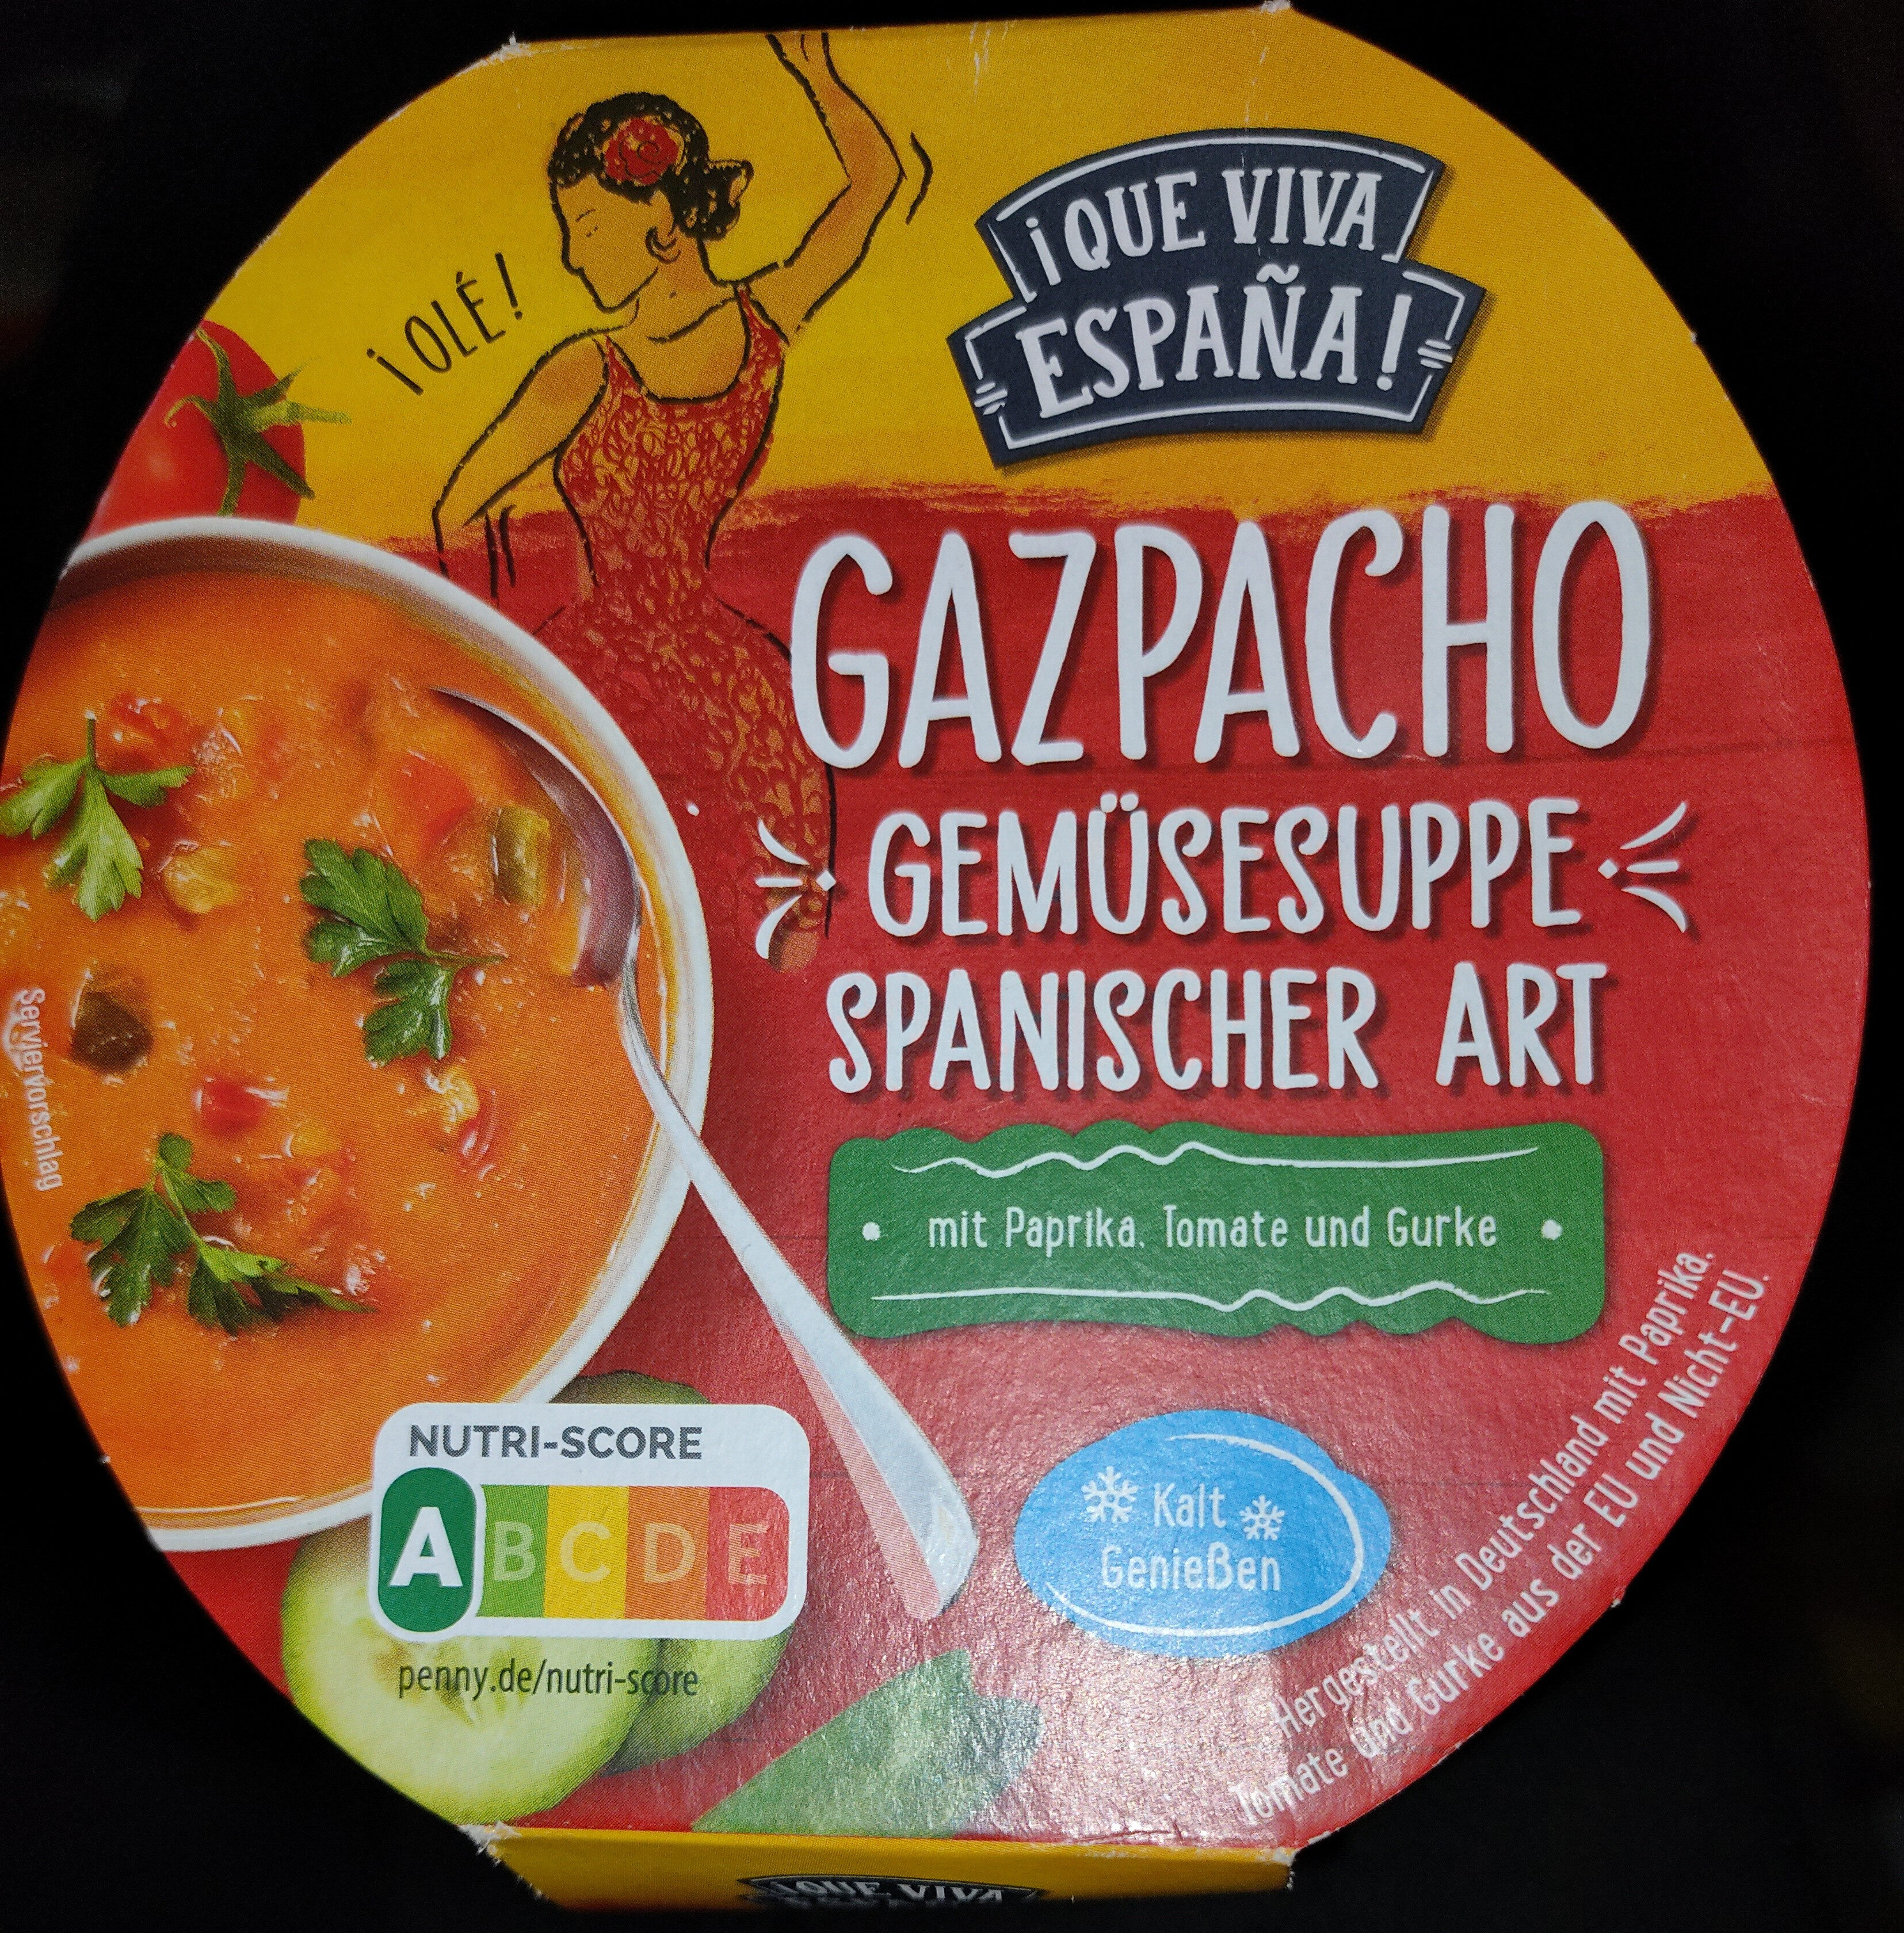 Gazpacho - Gemüsesuppe Spanischer Art - Produit - de